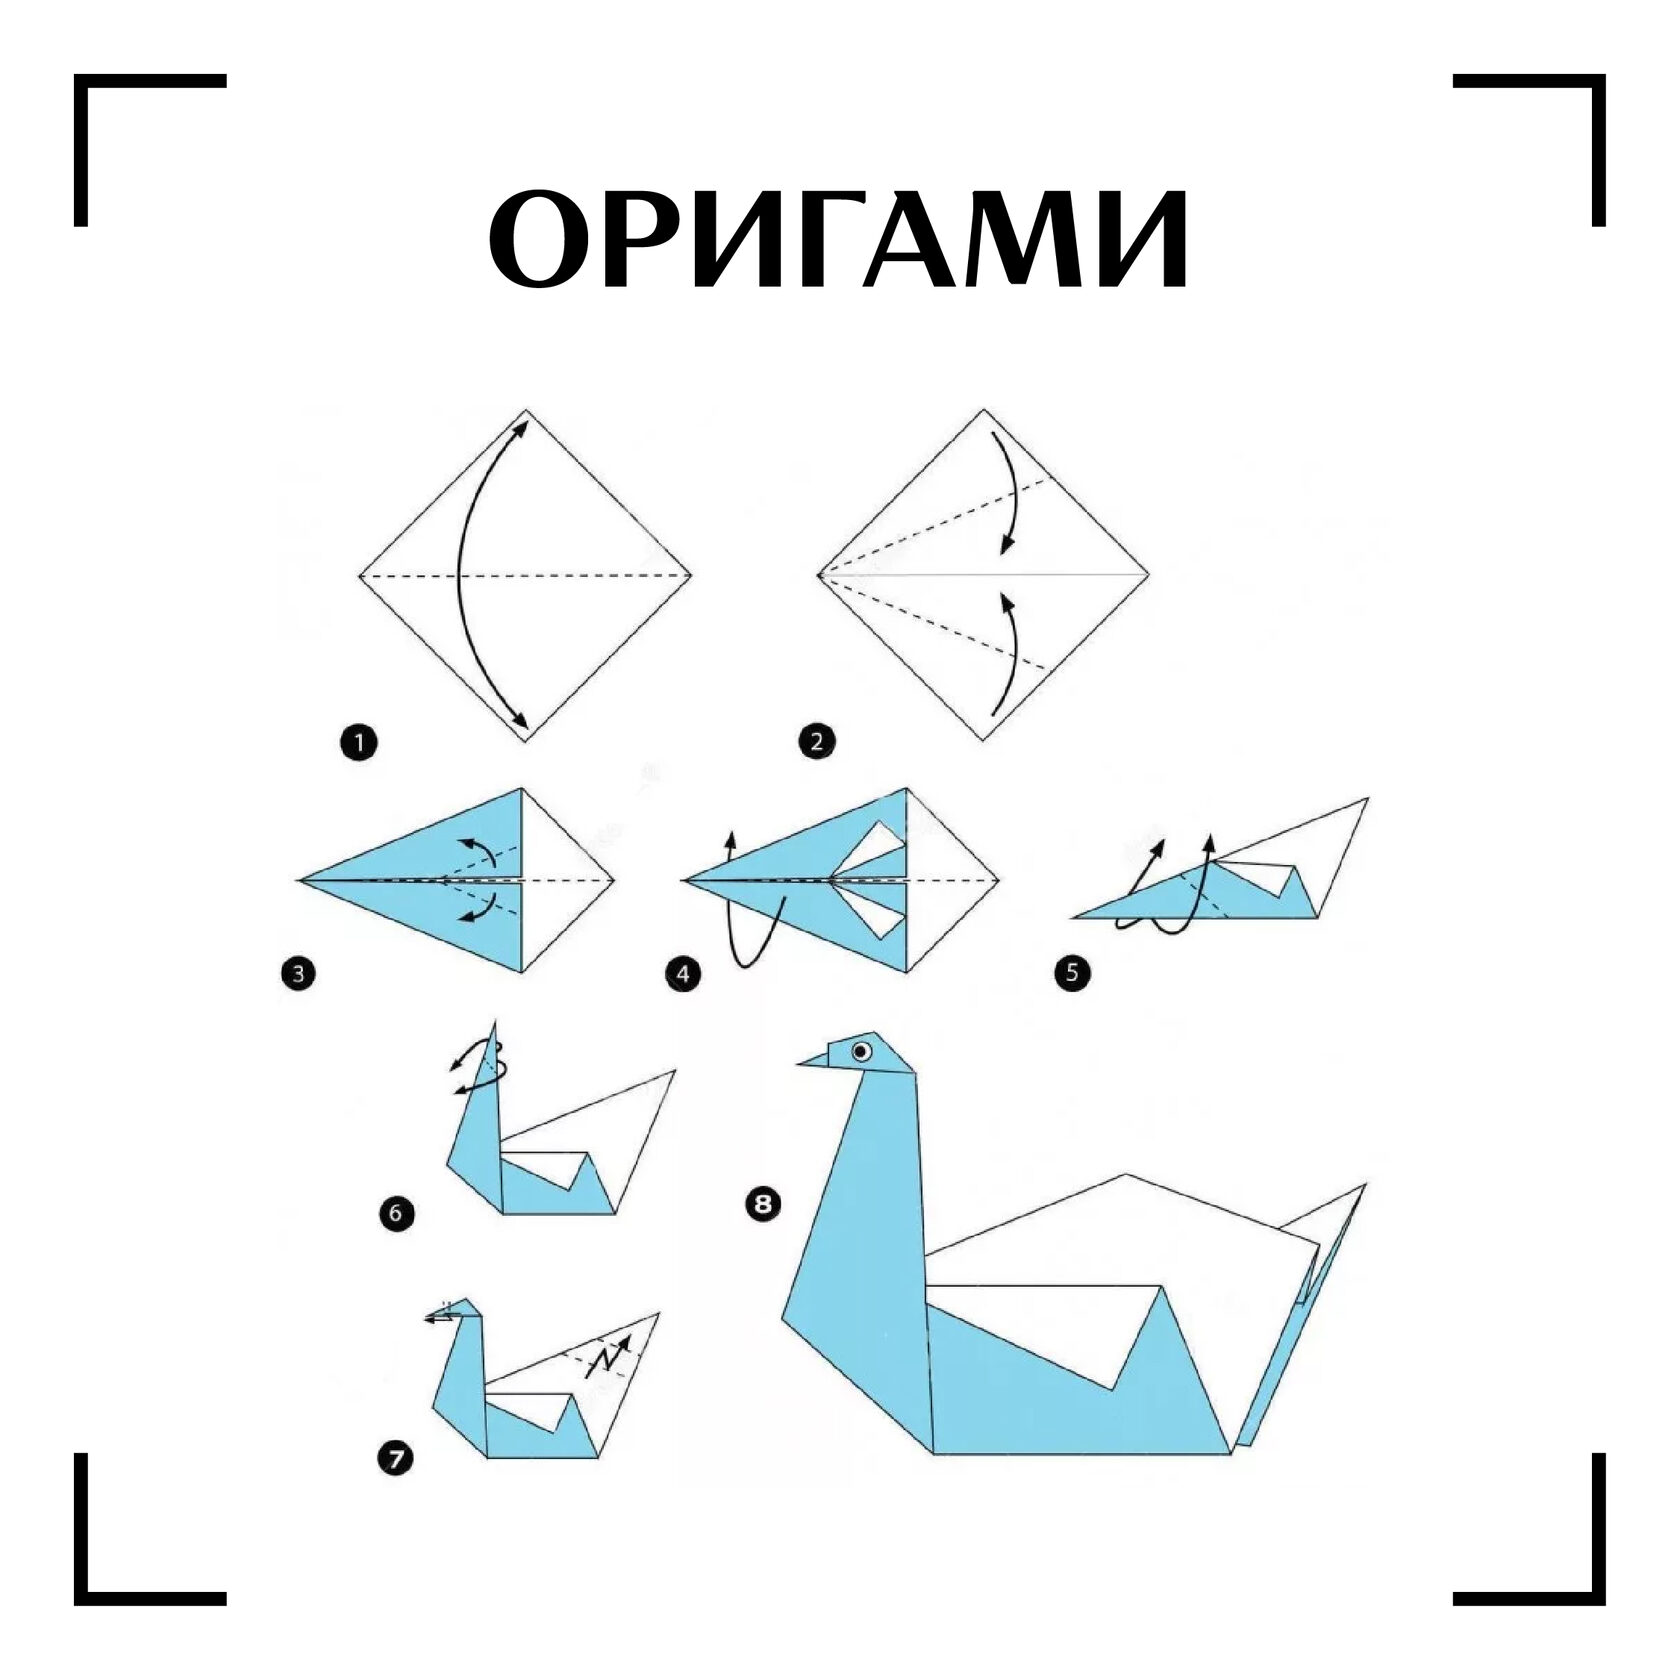 Лебеди из бумаги для детей. Оригами лебедь схема. Оригами птичка схема лебедь. Как сделать лебедя из бумаги пошагово. Оригами лебедь пошагово для детей.